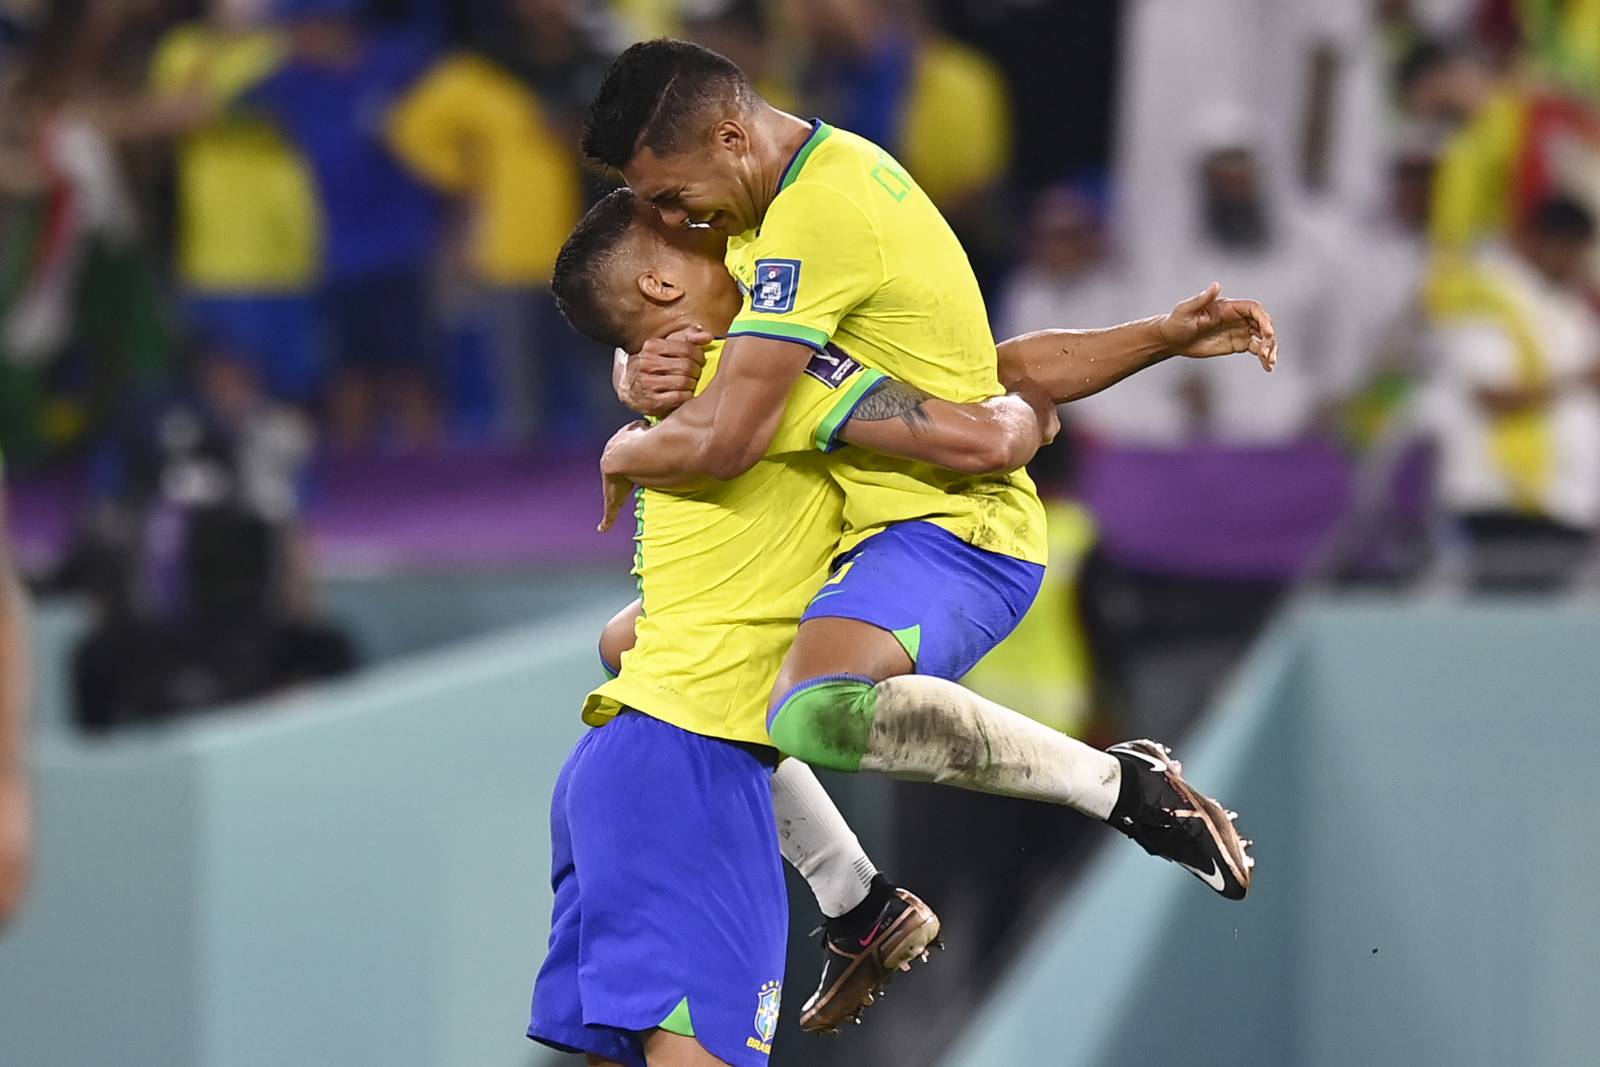 Бразилия – первая сборная в истории, не проигравшая в 17 матчах подряд на групповом этапе чемпионата мира